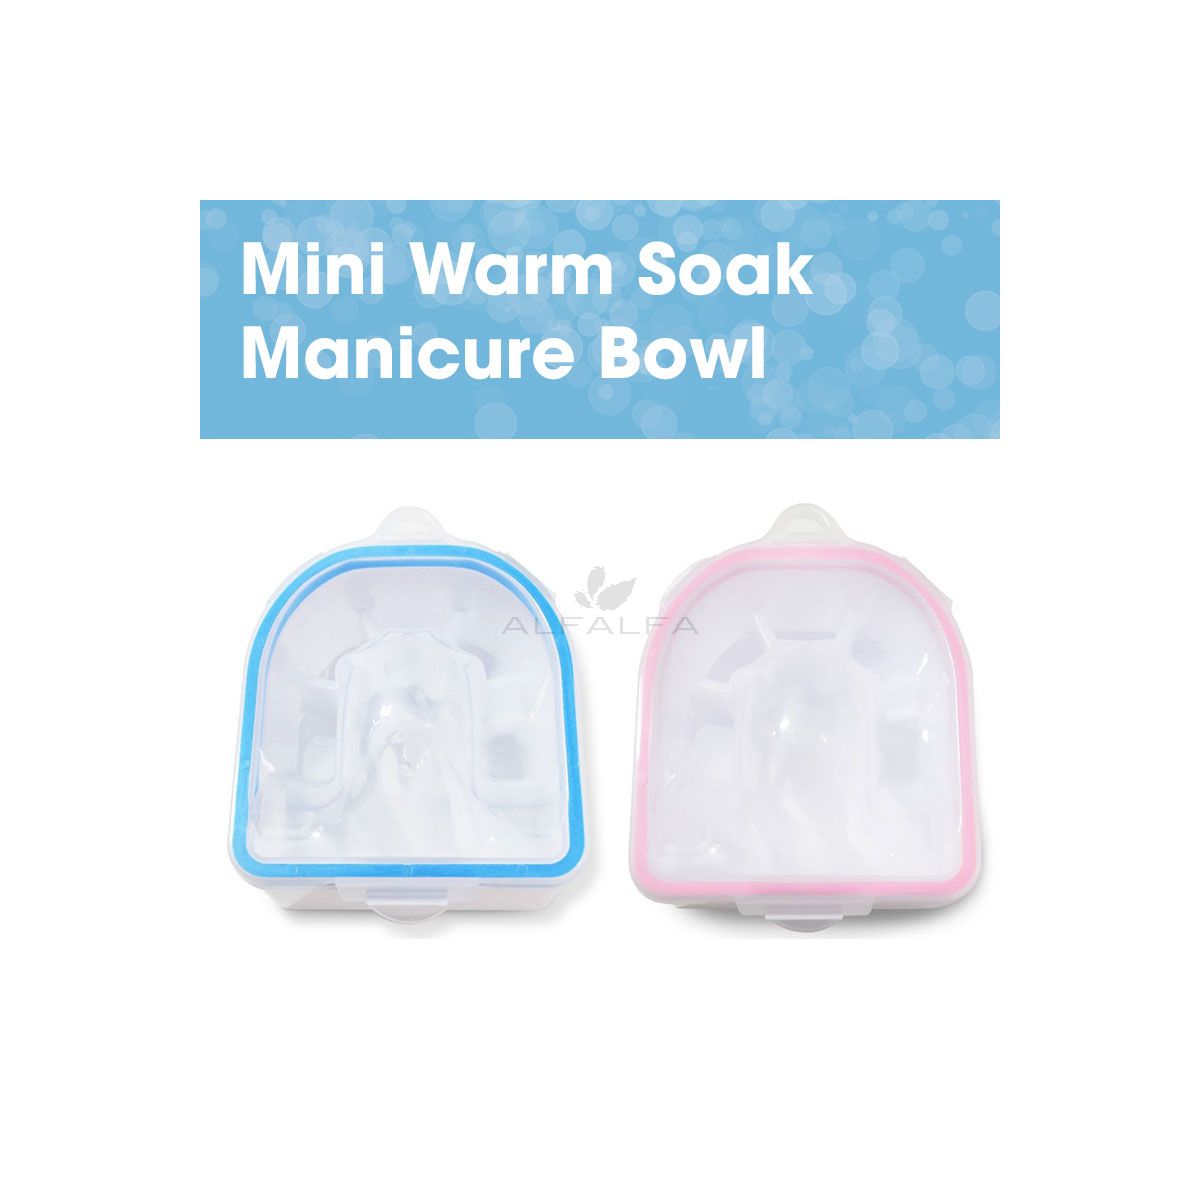 Mini Warm Soak Manicure Bowl